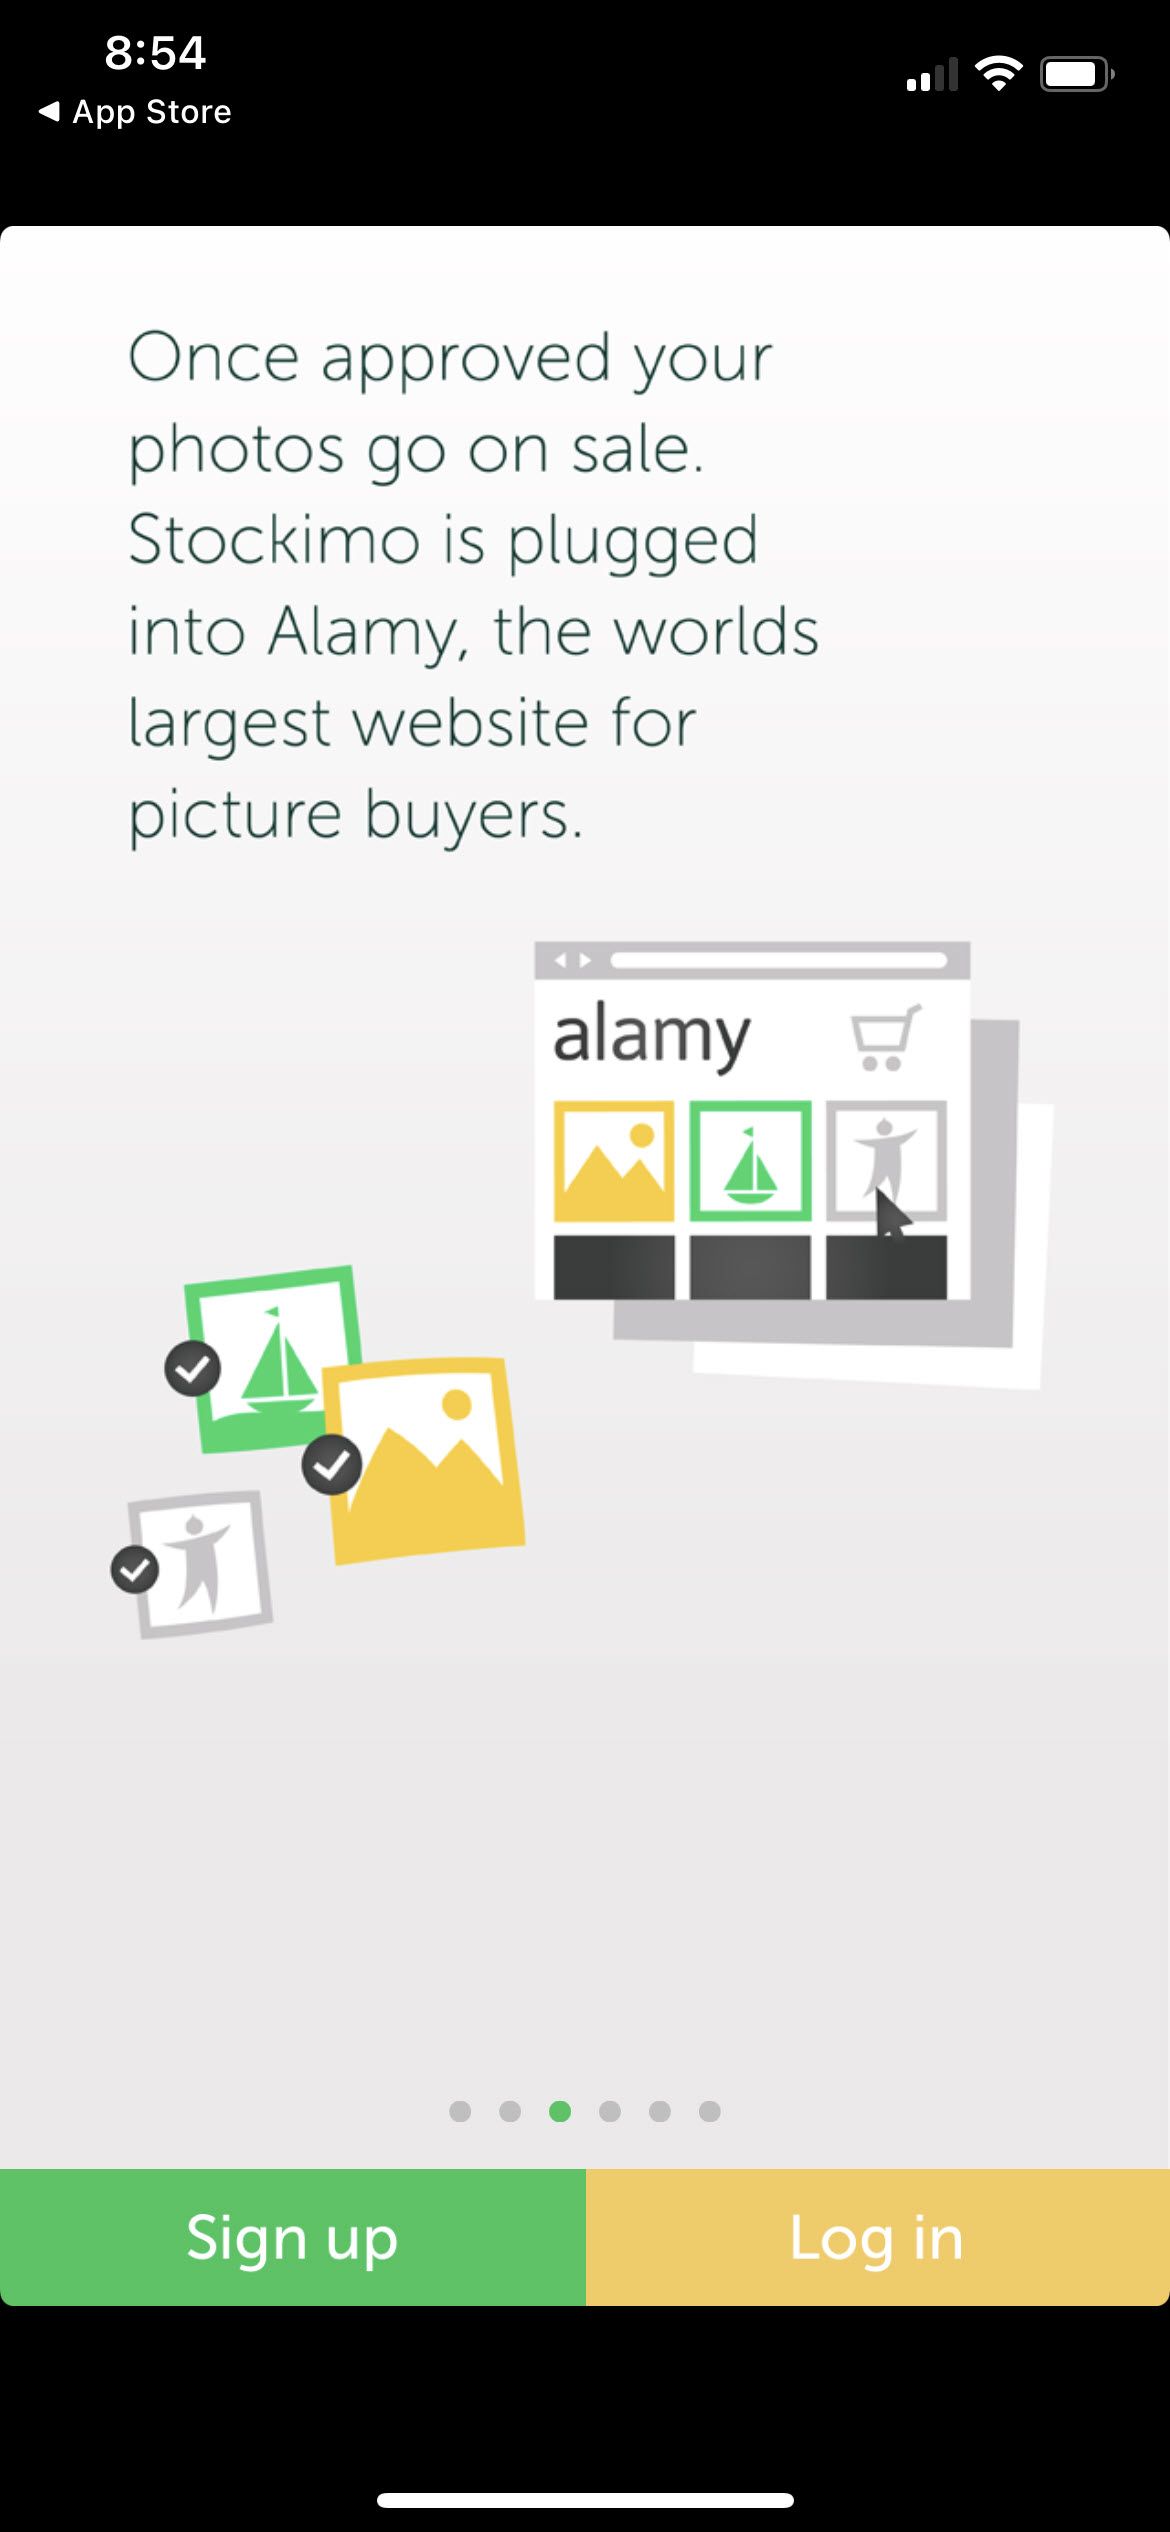 Alamy's Stockimo app